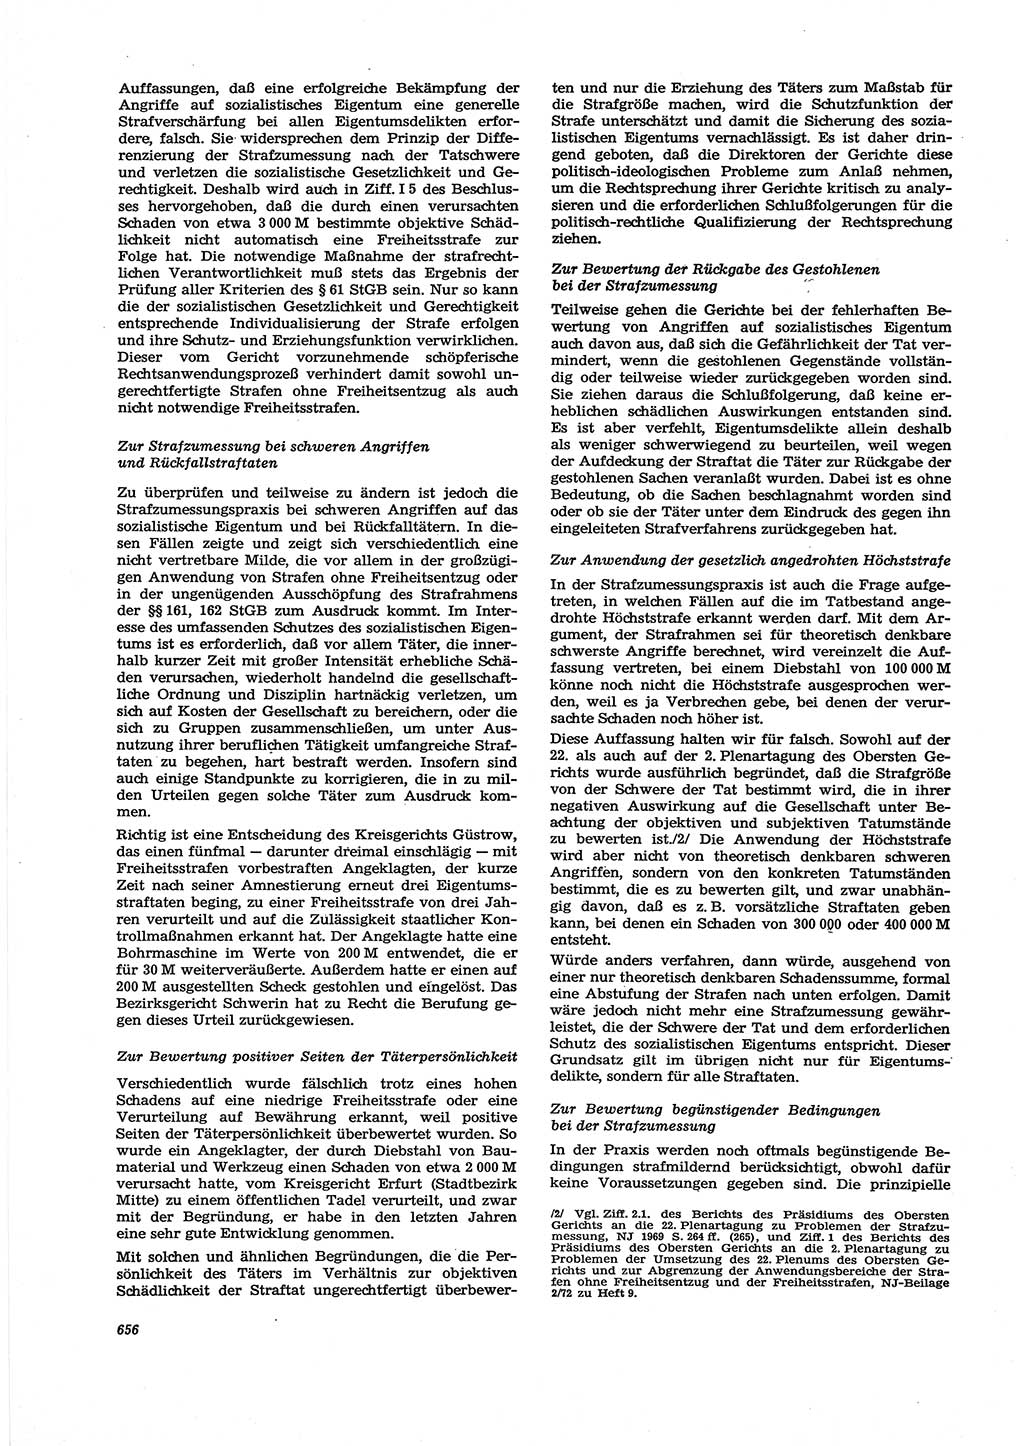 Neue Justiz (NJ), Zeitschrift für Recht und Rechtswissenschaft [Deutsche Demokratische Republik (DDR)], 27. Jahrgang 1973, Seite 656 (NJ DDR 1973, S. 656)